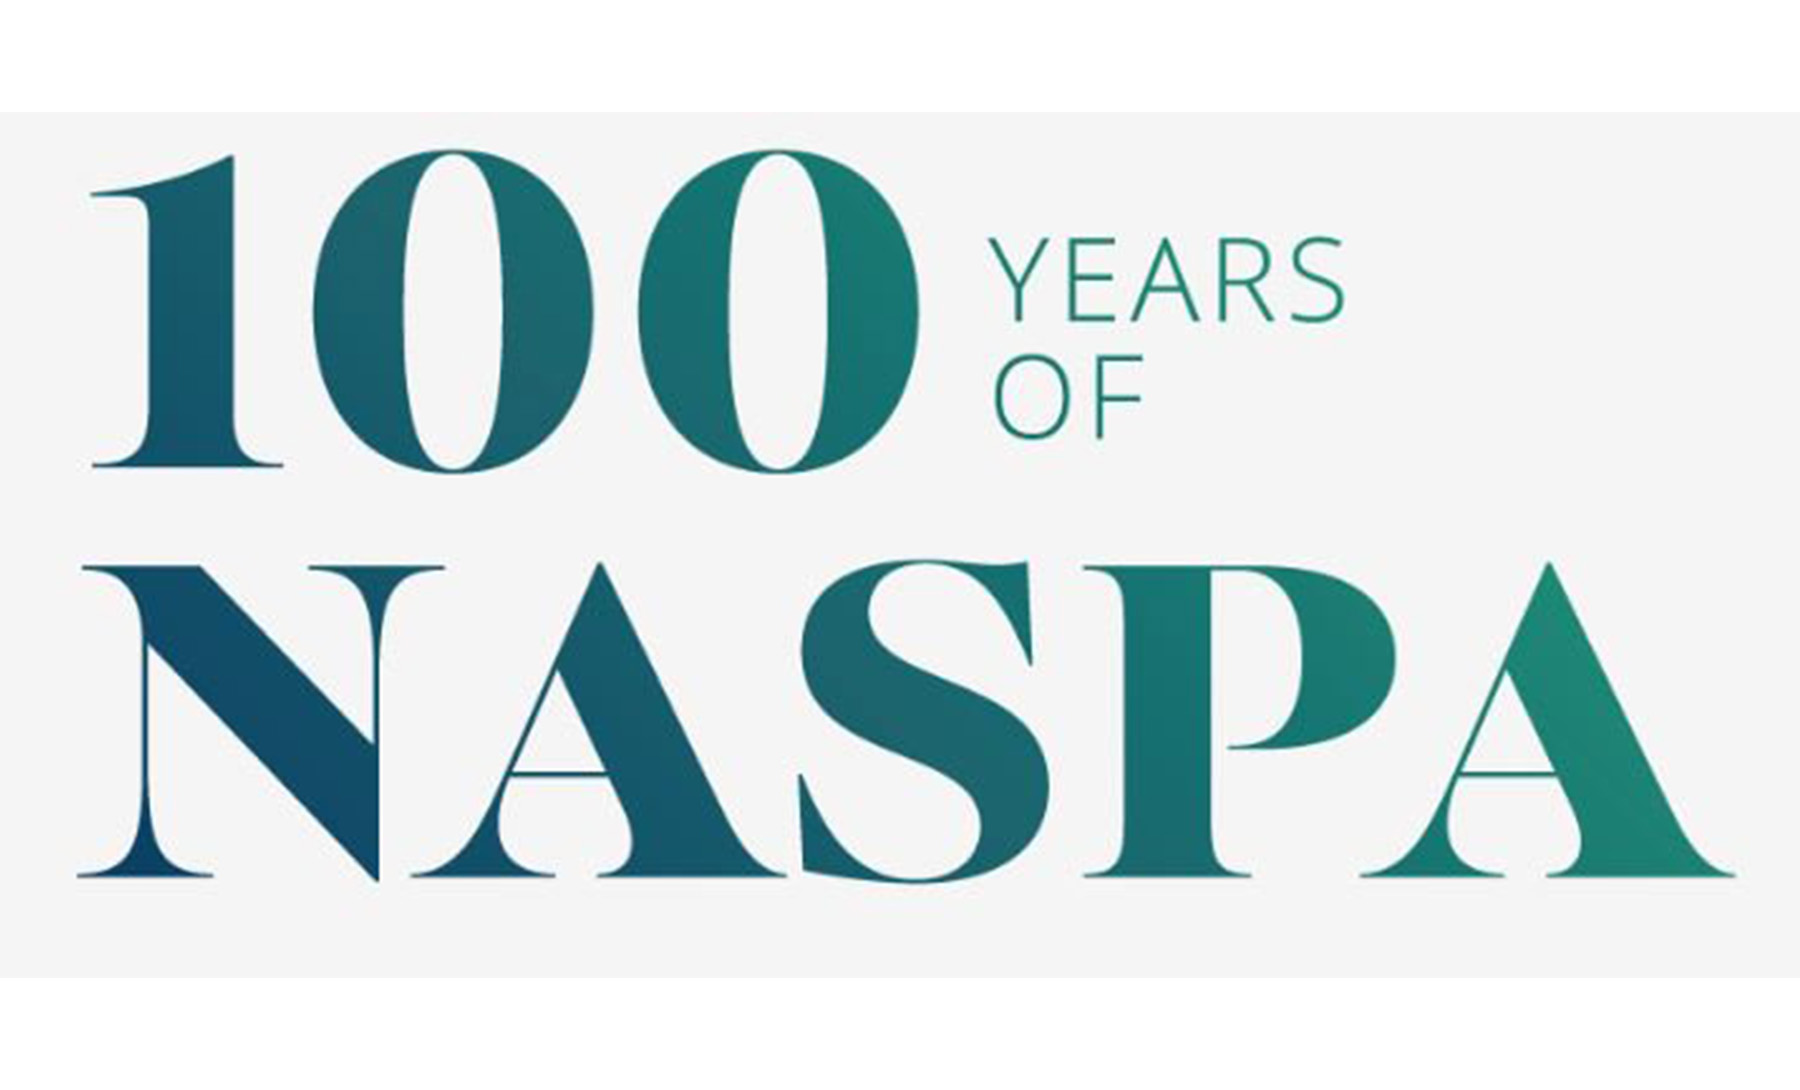 NASPA 100 Years